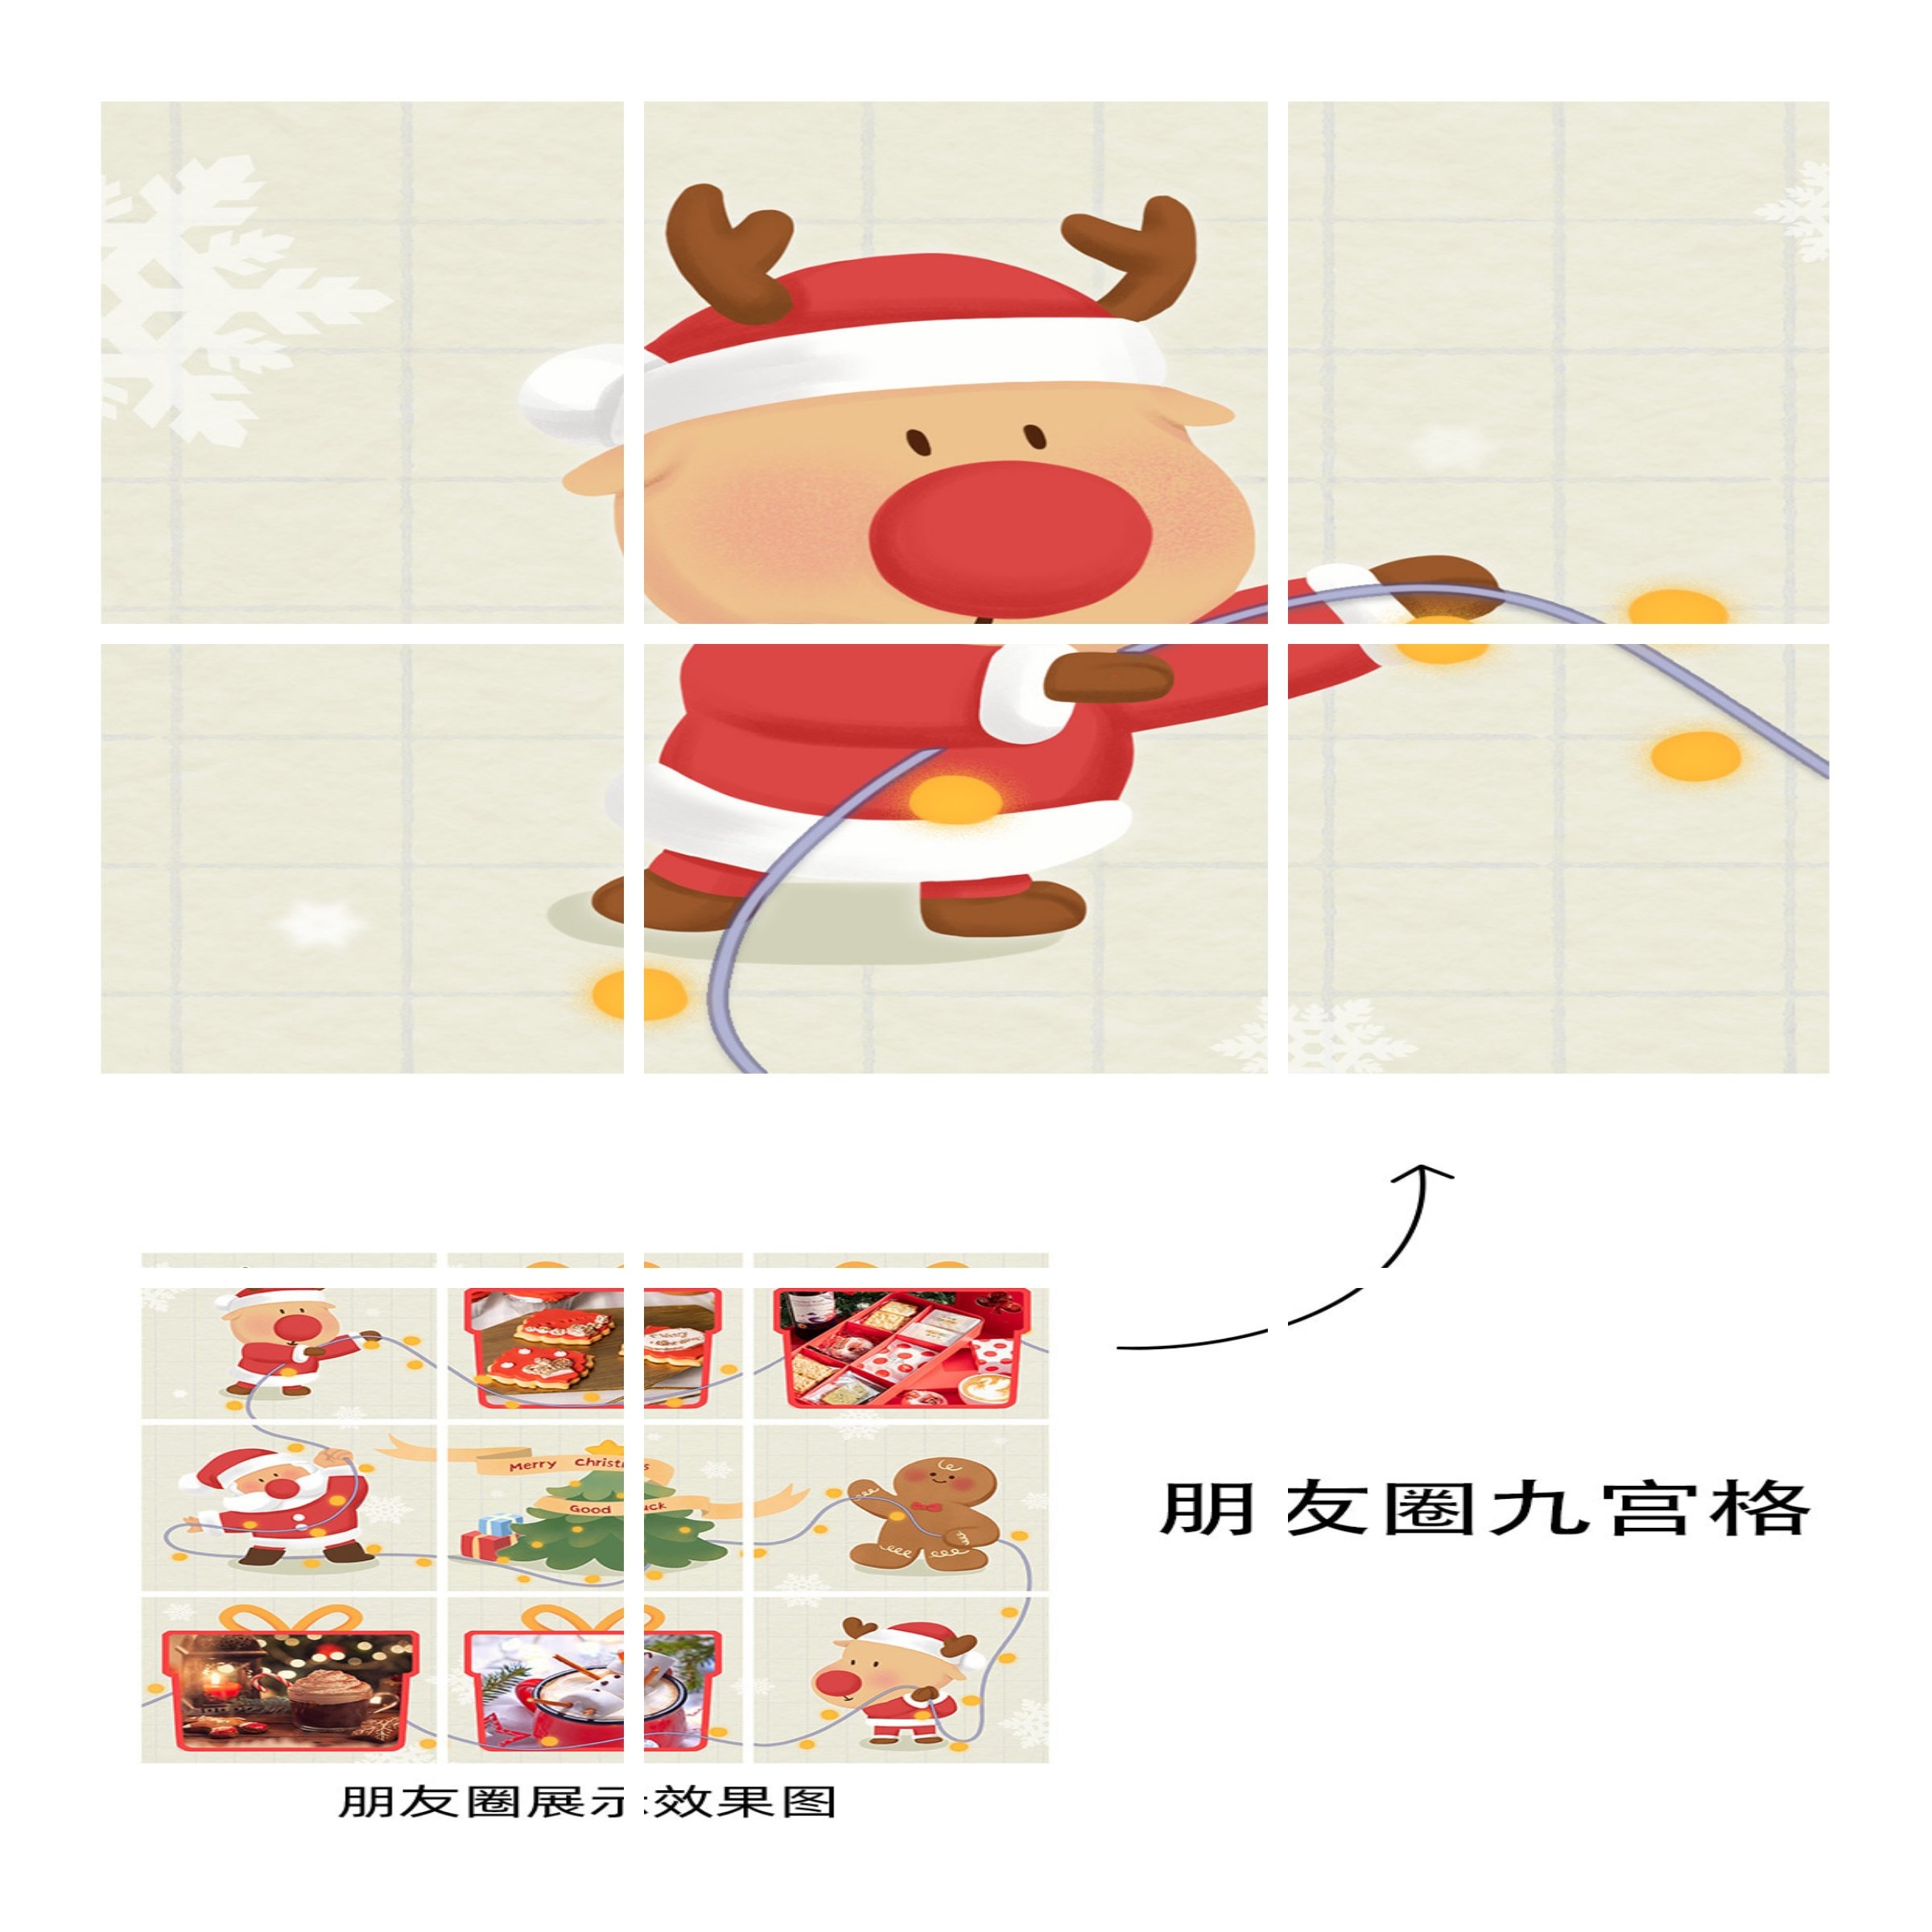 圣诞节产品展示九宫格可爱卡通01预览效果